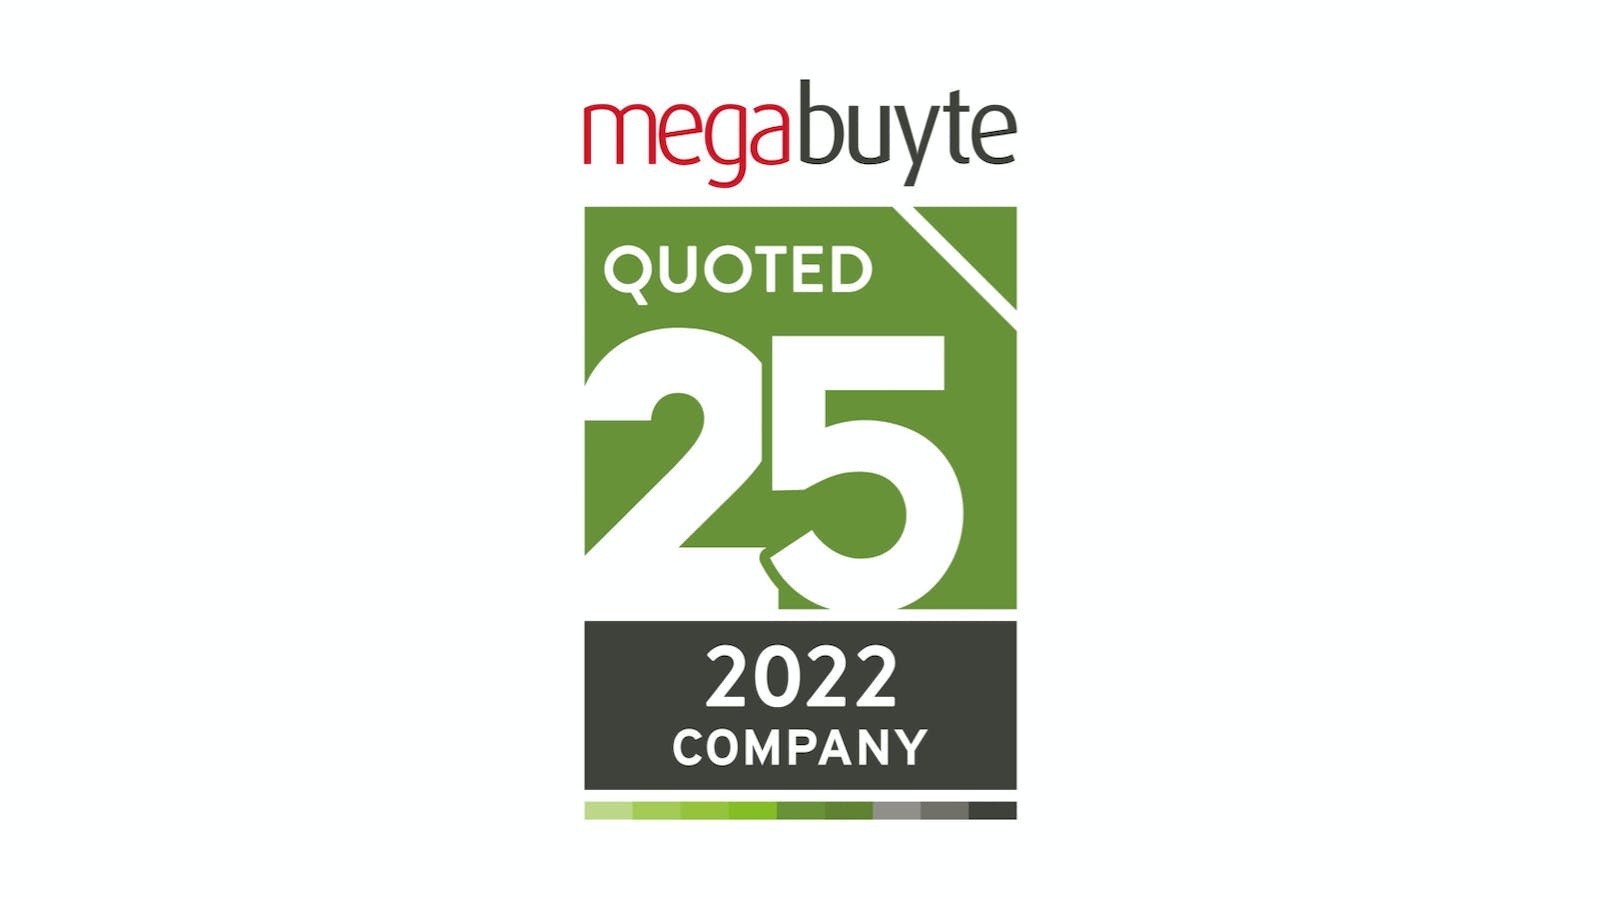 Megabuyte Quoted 25 2022 Company logo